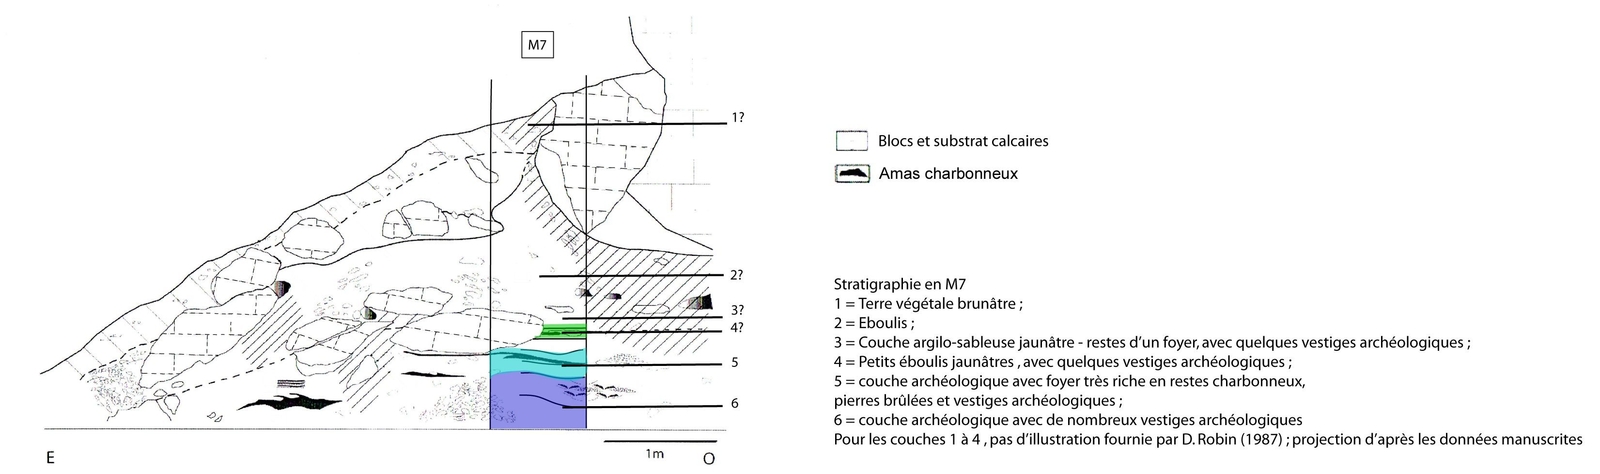 Coupe stratigraphique des travaux de D. Robin et A. Roussot